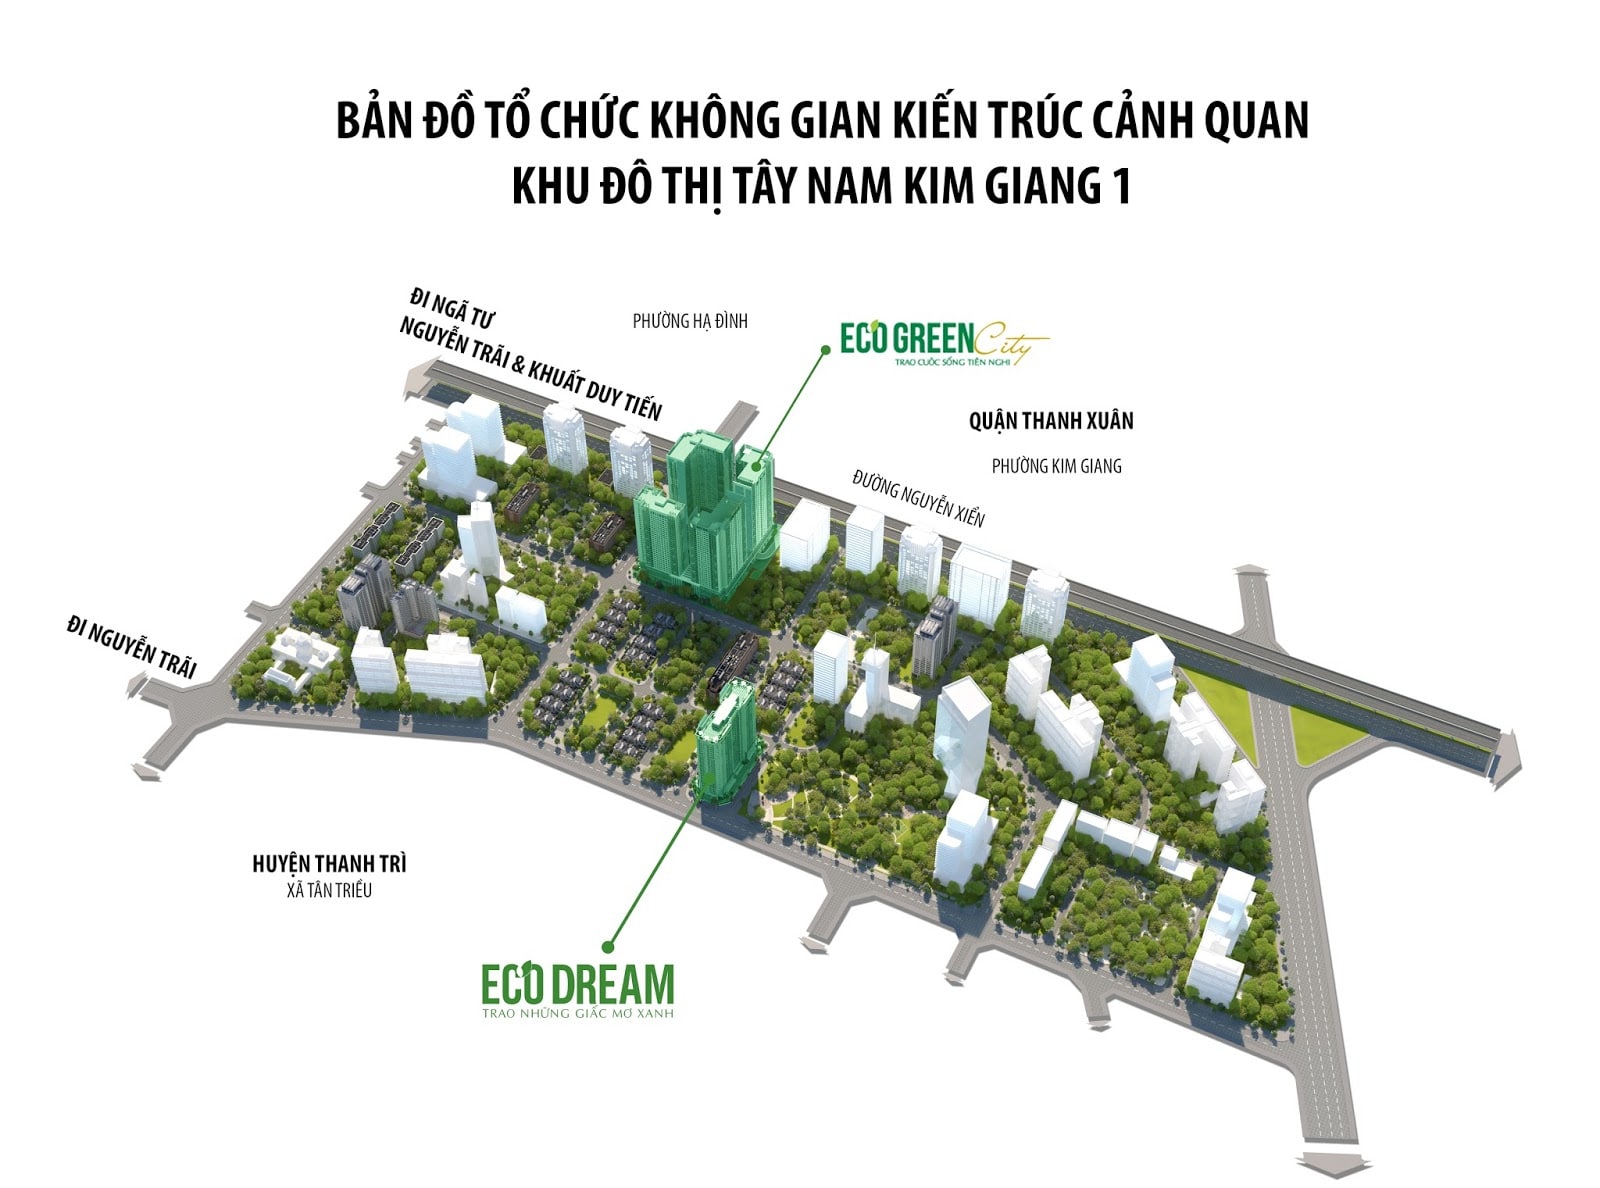 Chung cư Eco Dream City nằm trong khu đô thị Tây Nam Kim Giang.